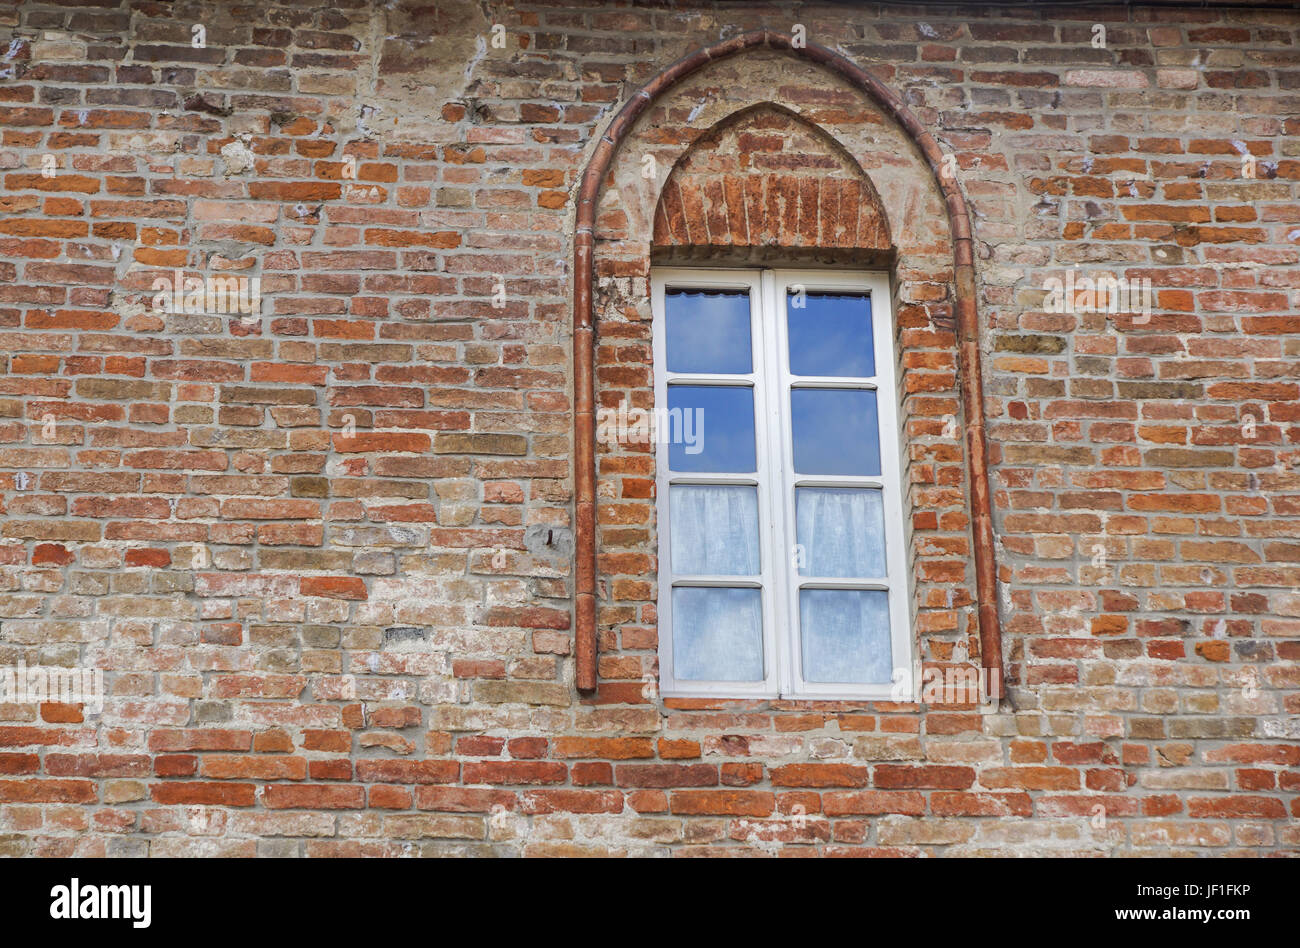 Fenêtre du château dans un style médiéval. Fenêtre en arche sur une façade de mur médiéval. Biforium - ancienne fenêtre avec colonne, ancien élément de l'architecture romaine et gothique. Banque D'Images